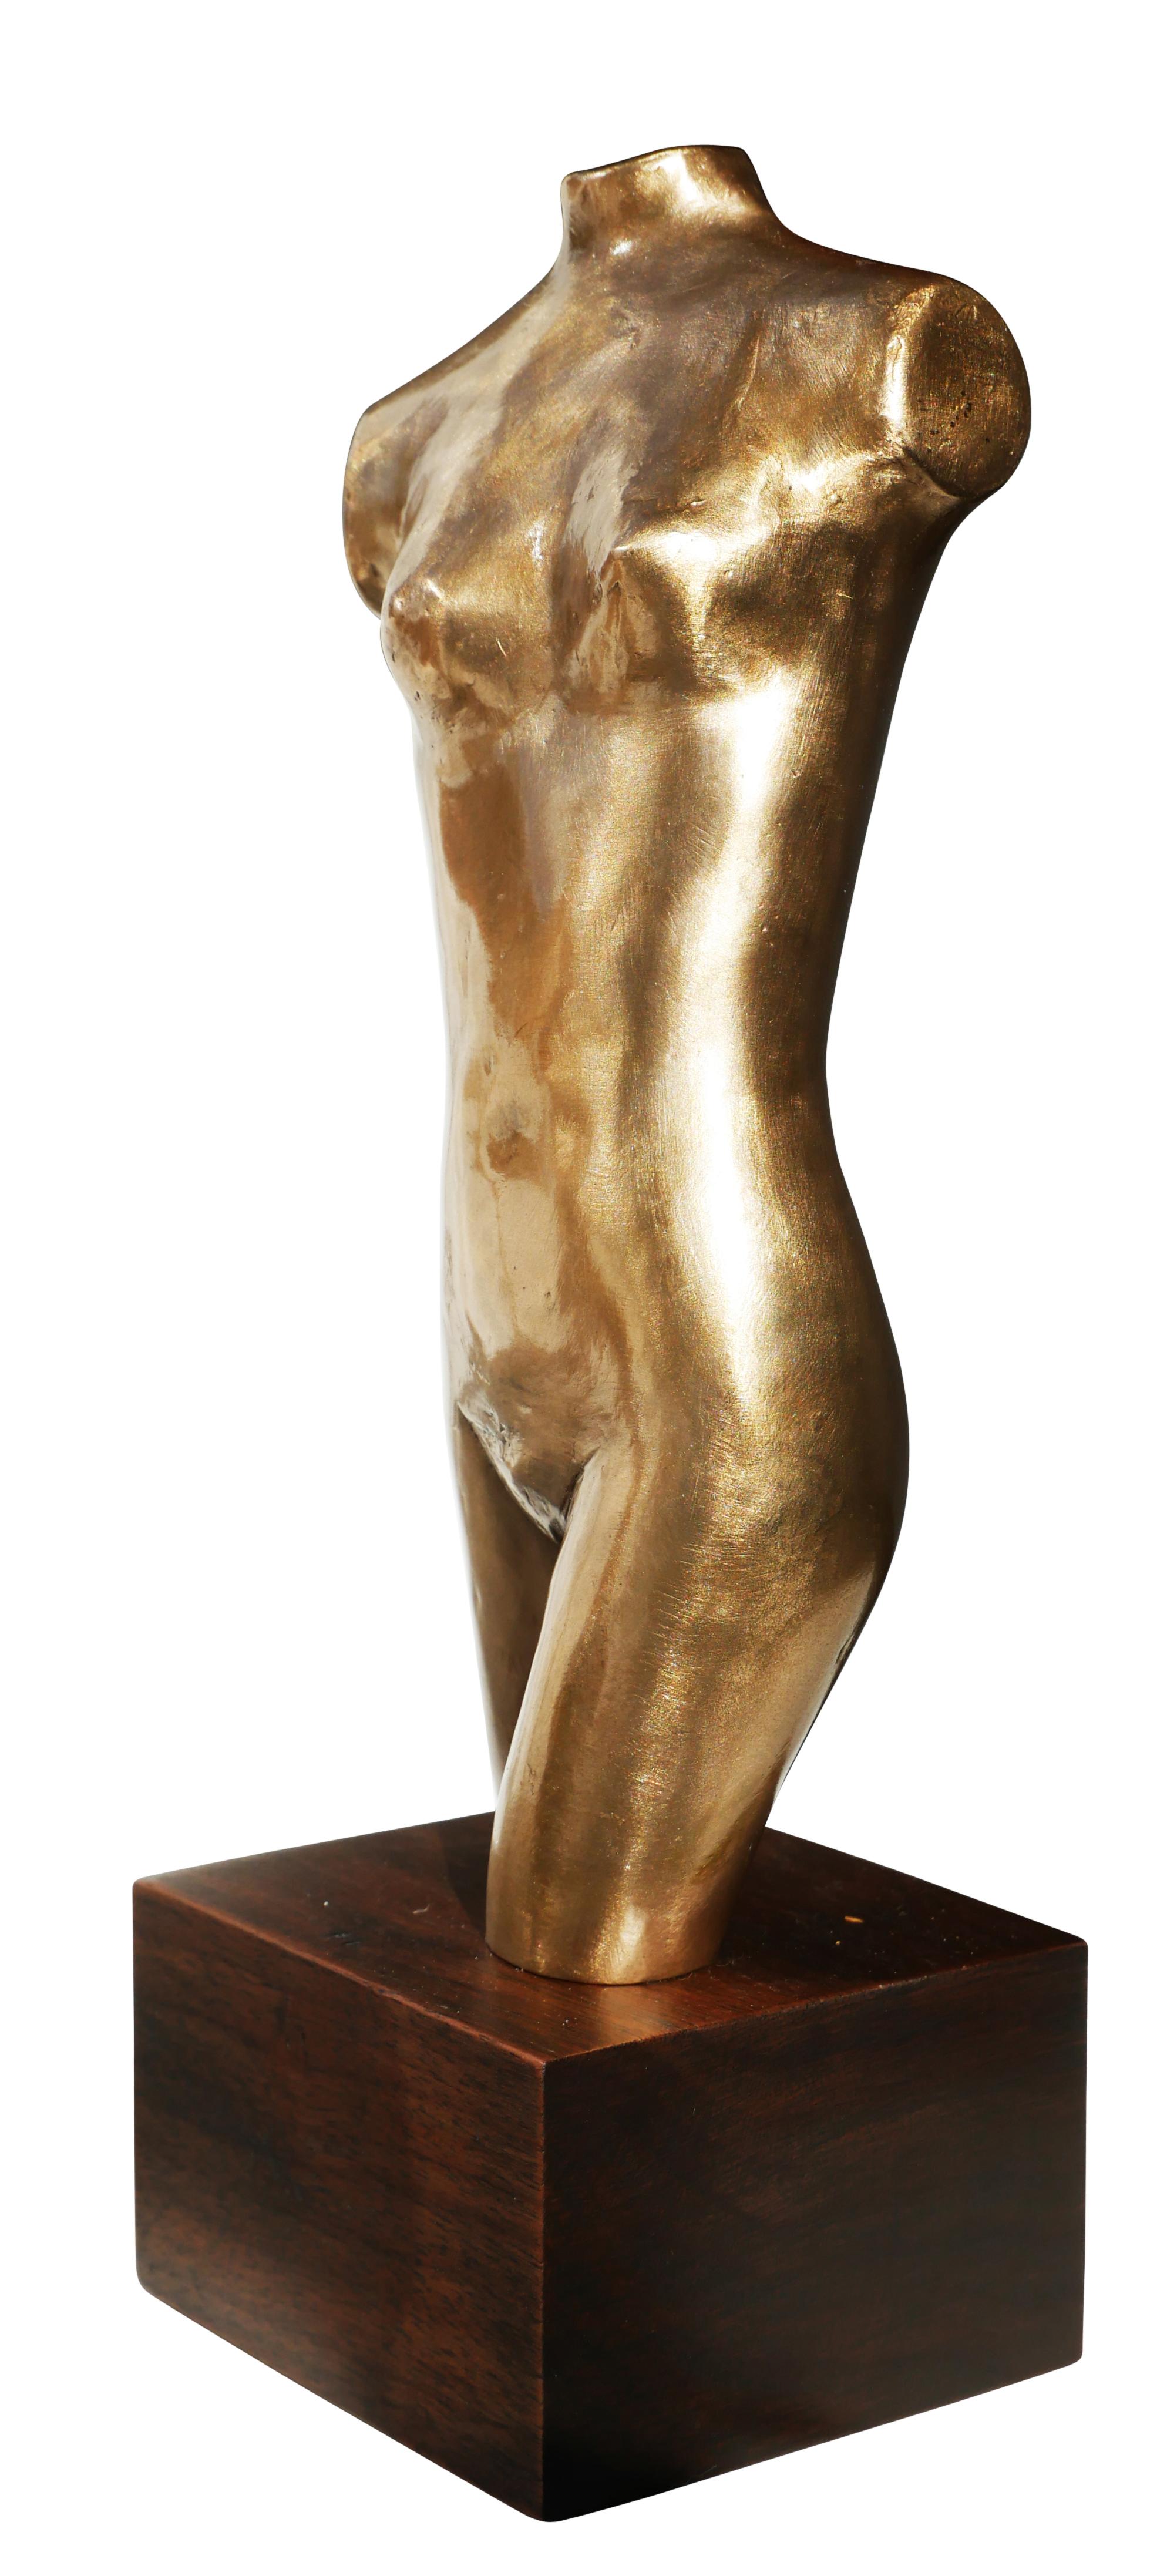 Nude Sculpture David Adickes - Sculpture en bronze d'un buste de femme nue sans bras de style moderniste abstrait